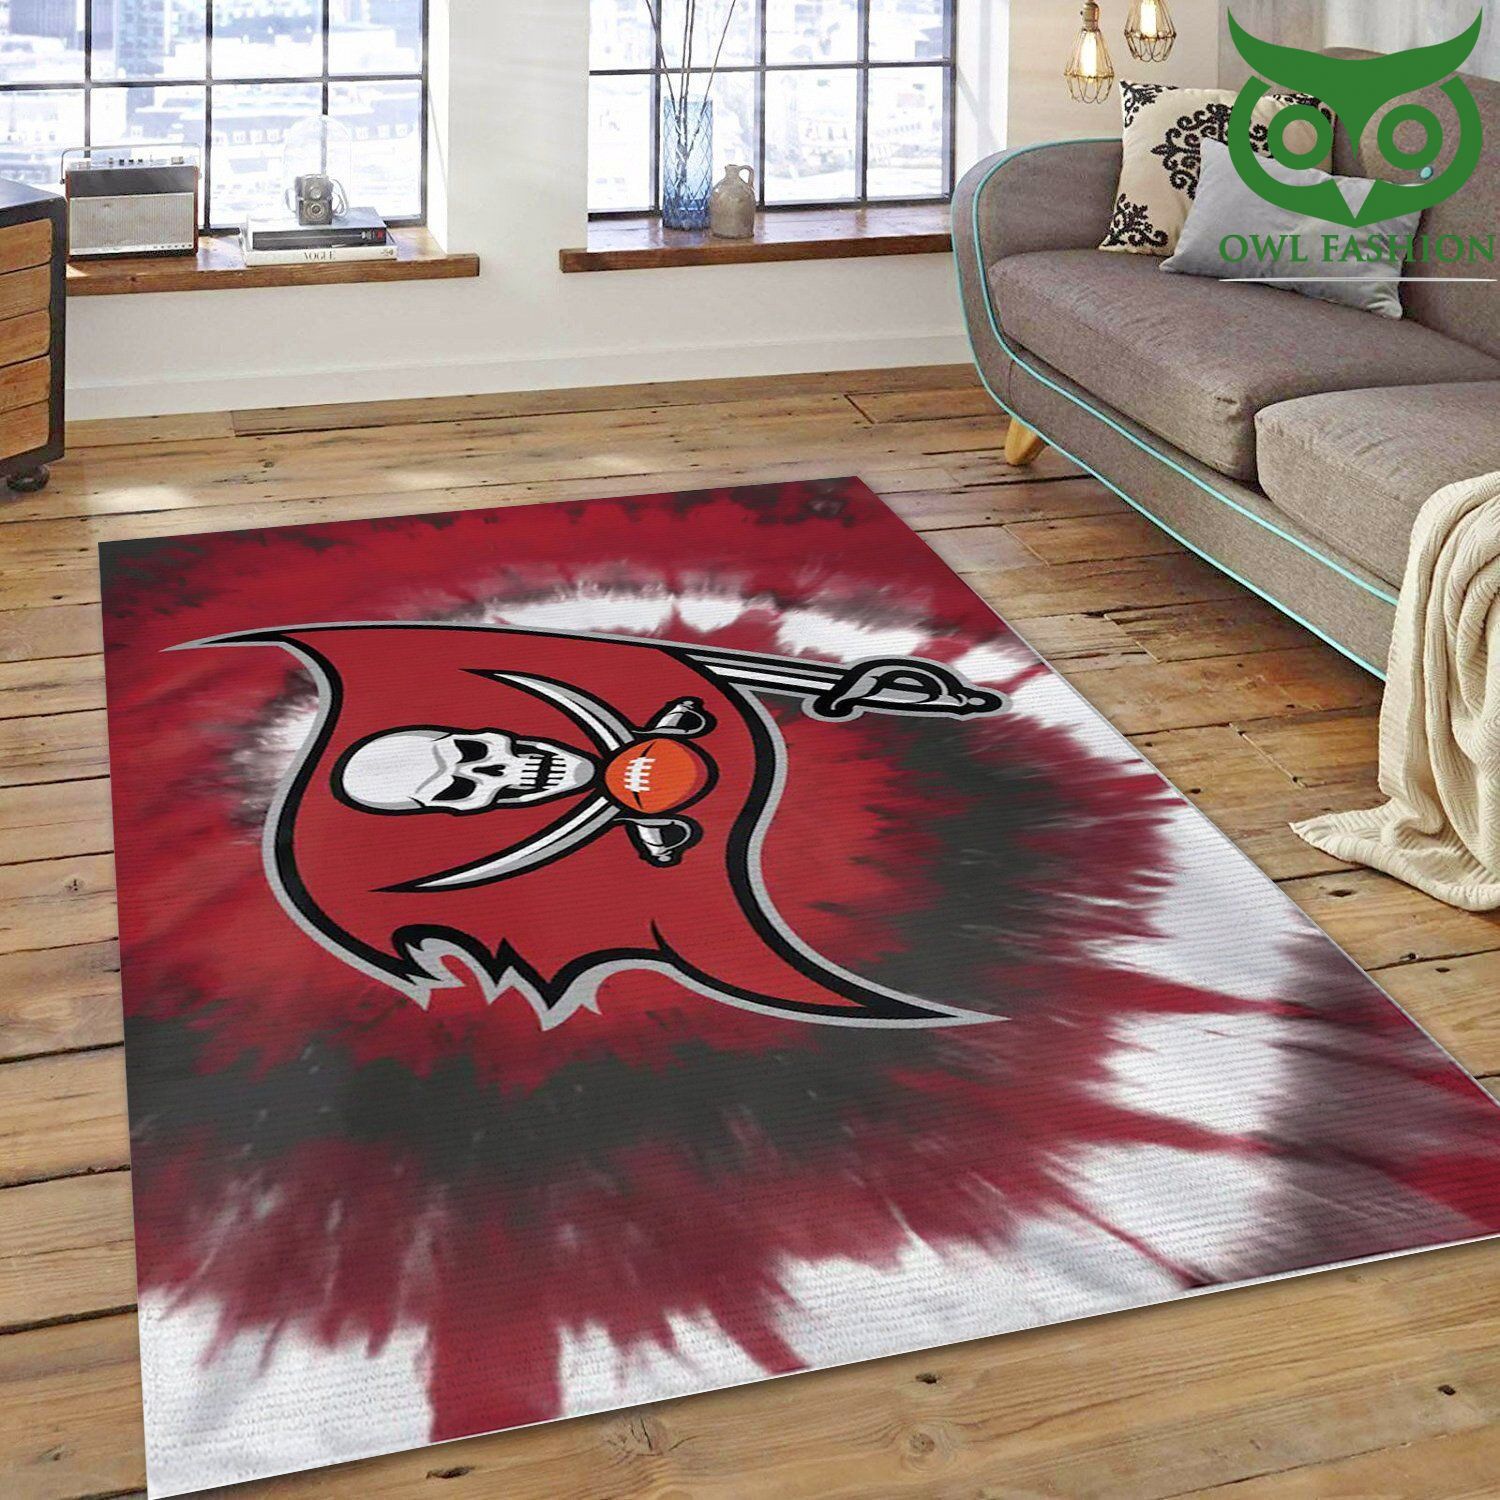 NFL Tampa Bay Buccaneers Area room decorate floor carpet rug 